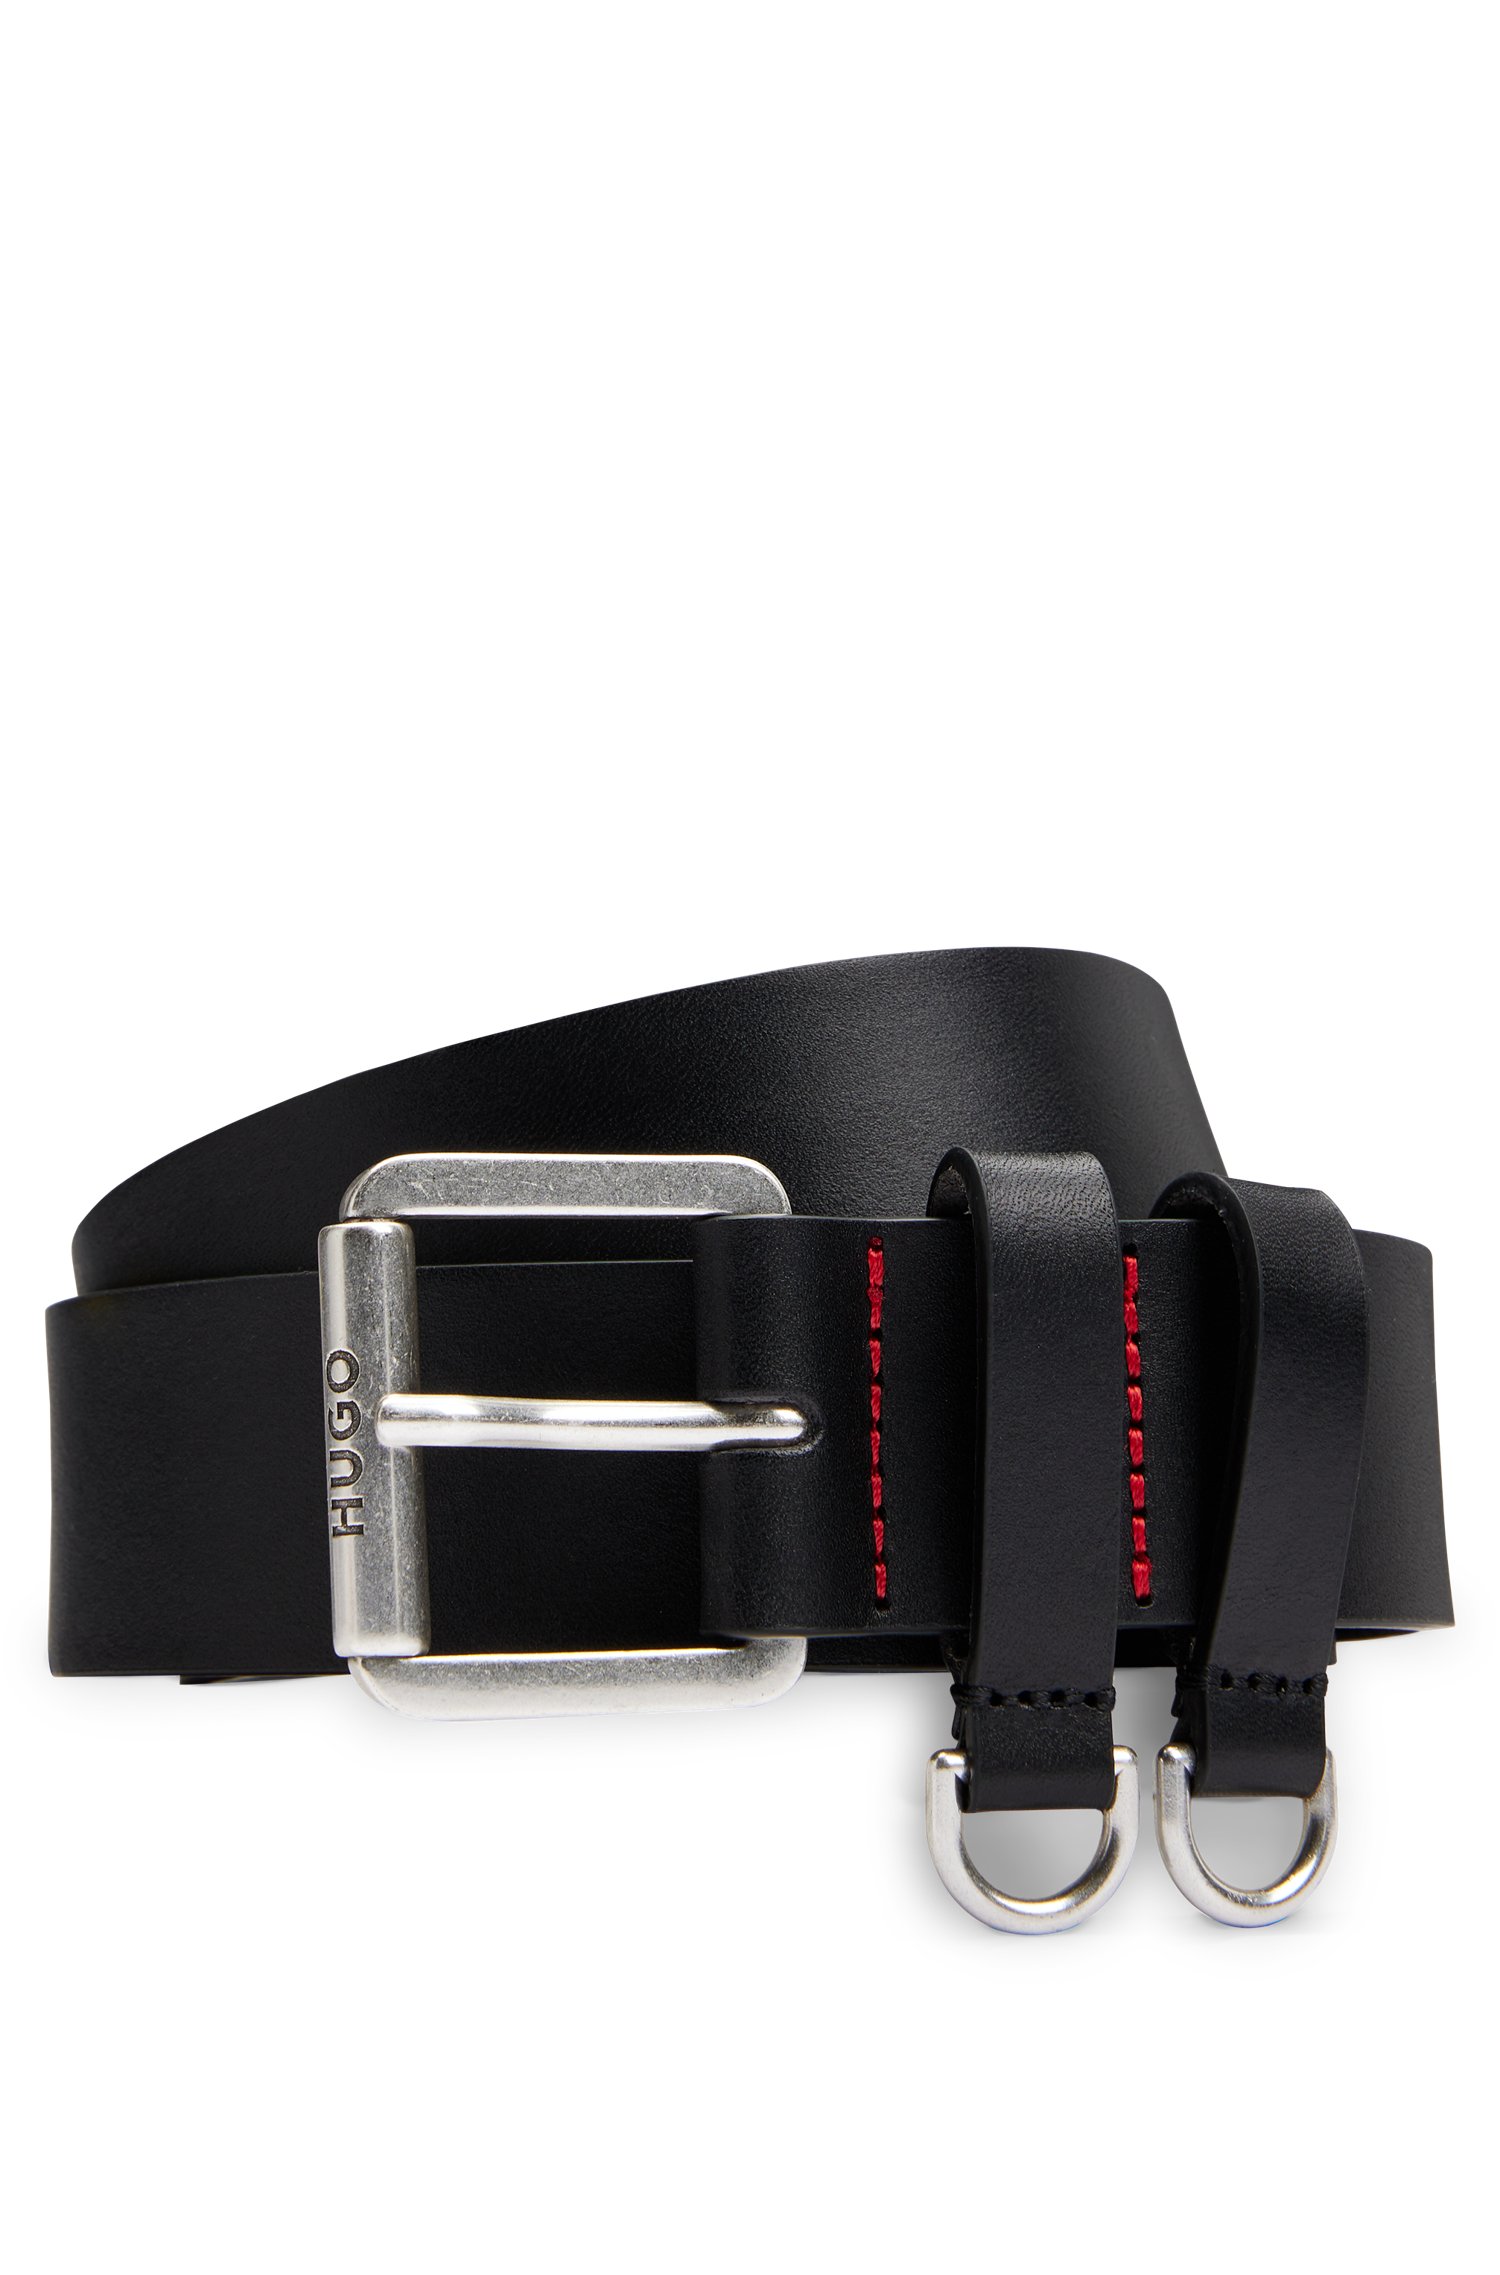 Cinturón de piel italiana con detalles anillas semicirculares